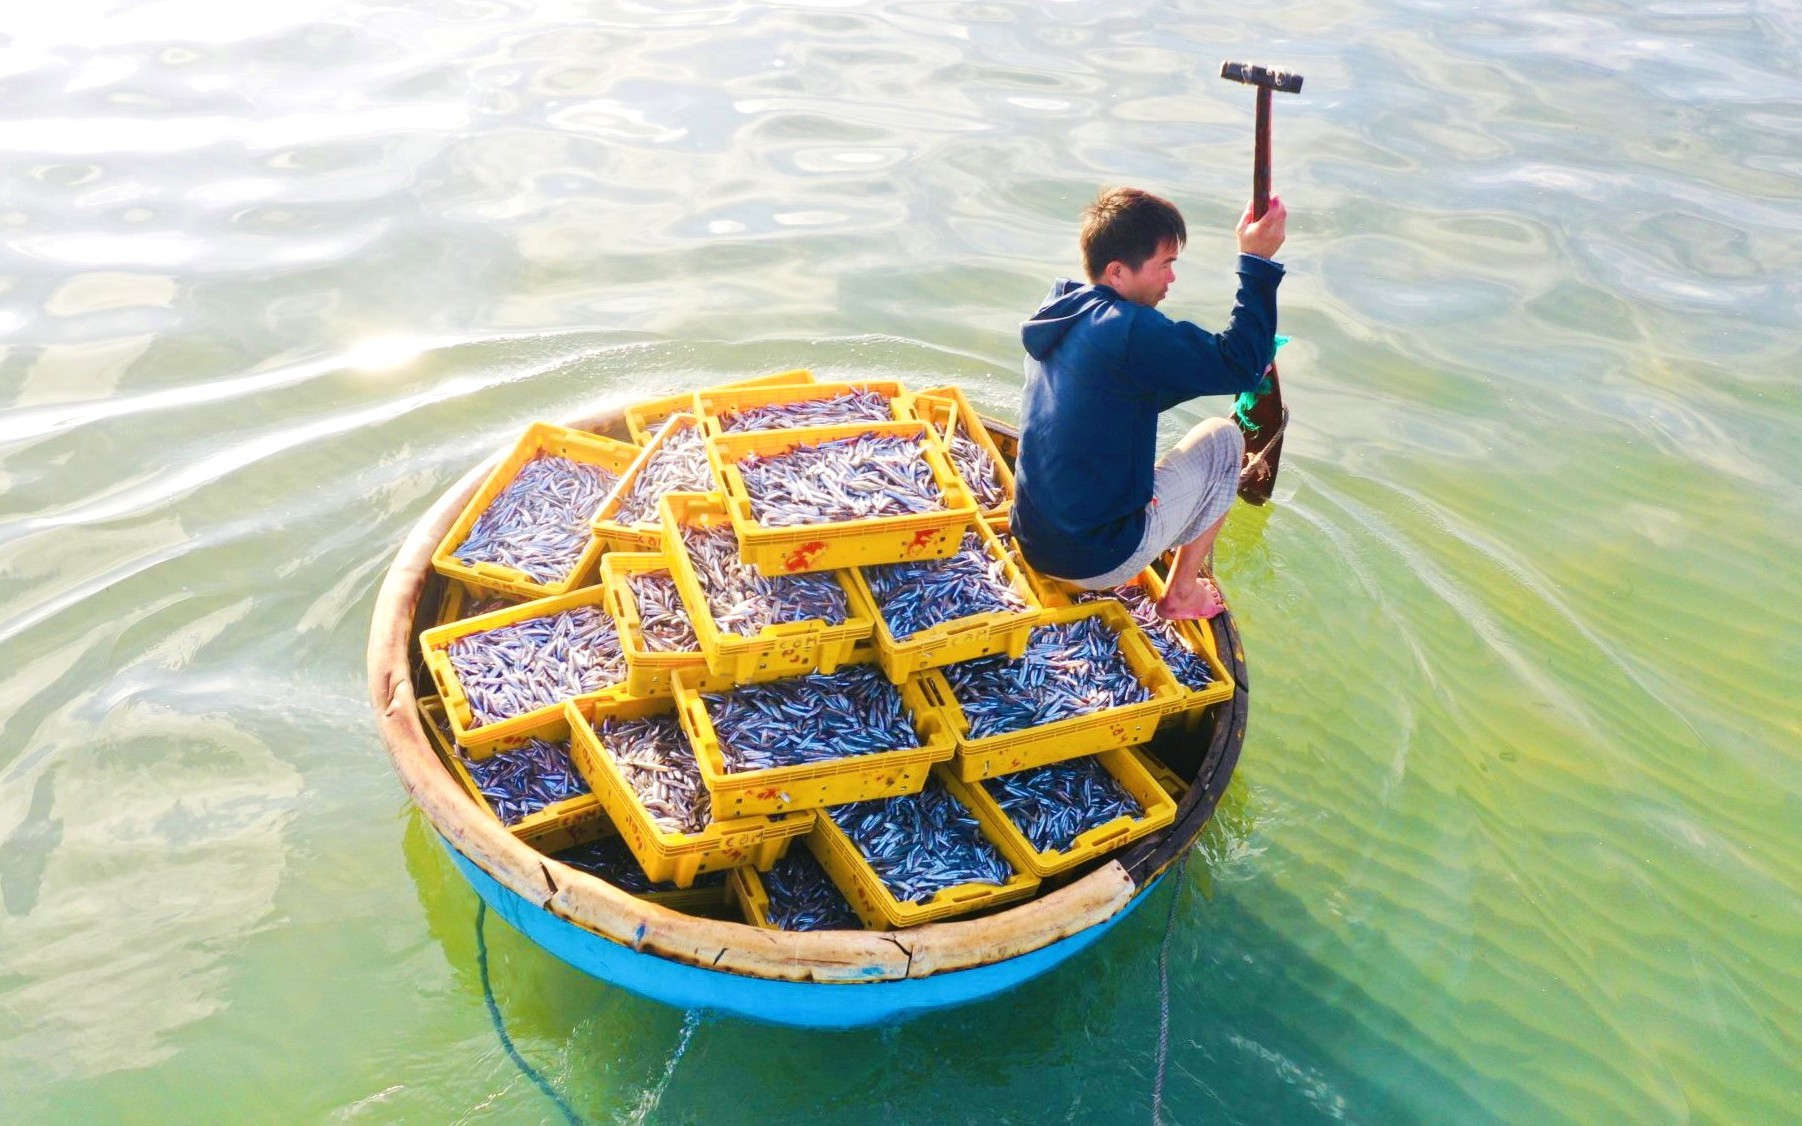 Ở Quảng Ngãi có cái chợ làng biển, hễ mặt trời ló rạng là tấp nập mua bán, cá cơm chất tươi đầy thuyền thúng